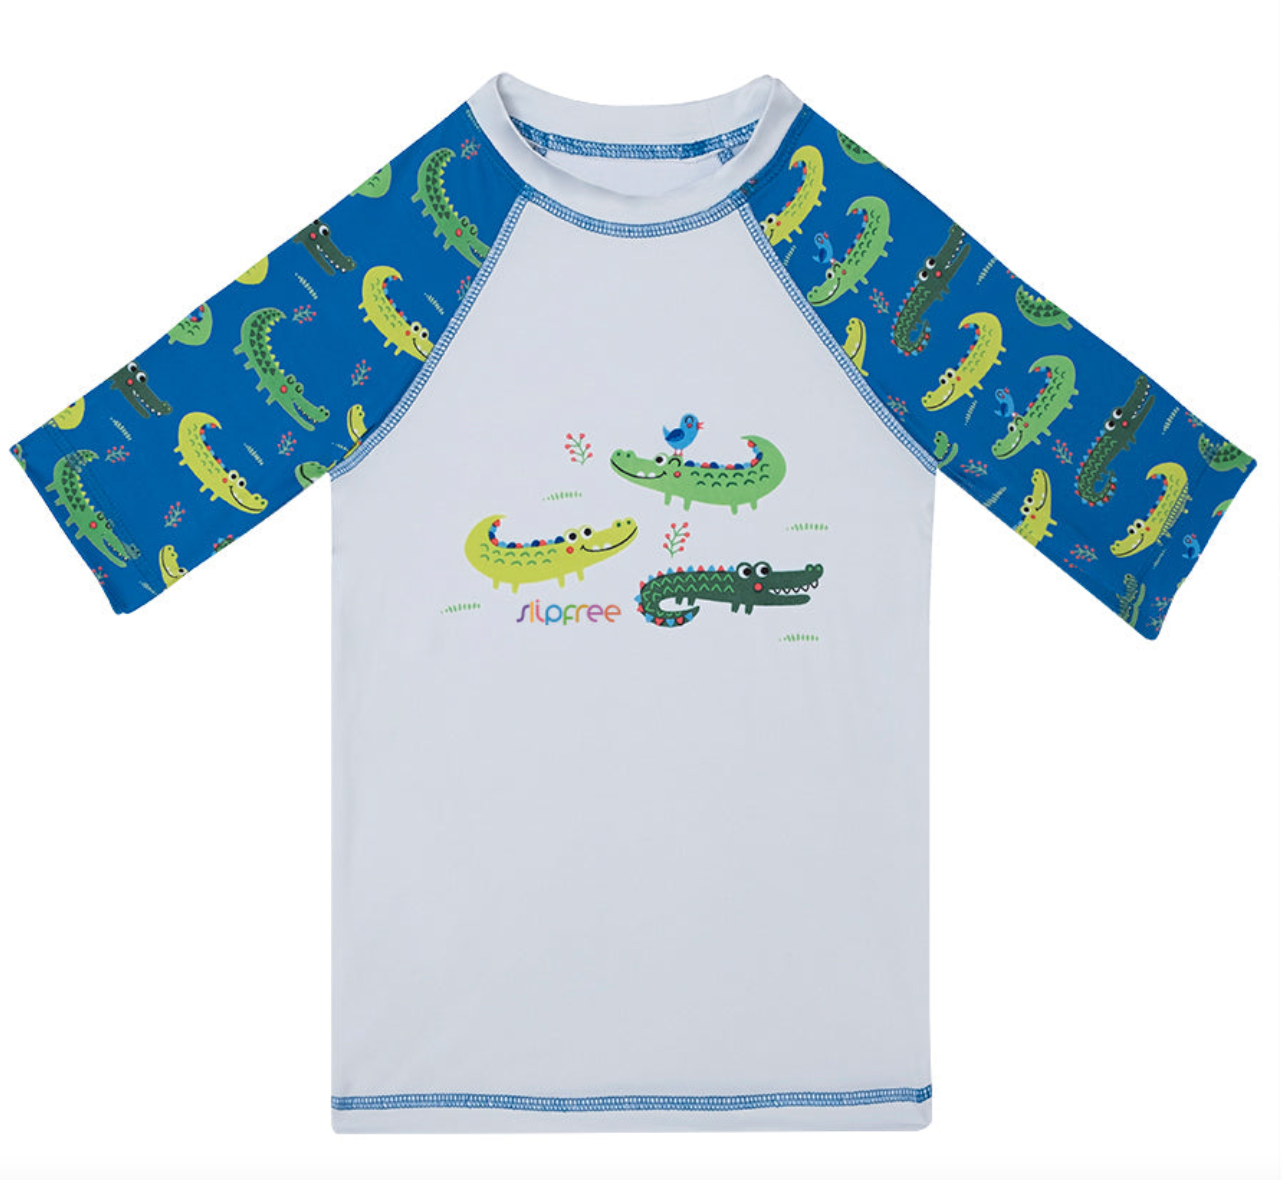 Slipfree Children's Rash Vest - Alligator